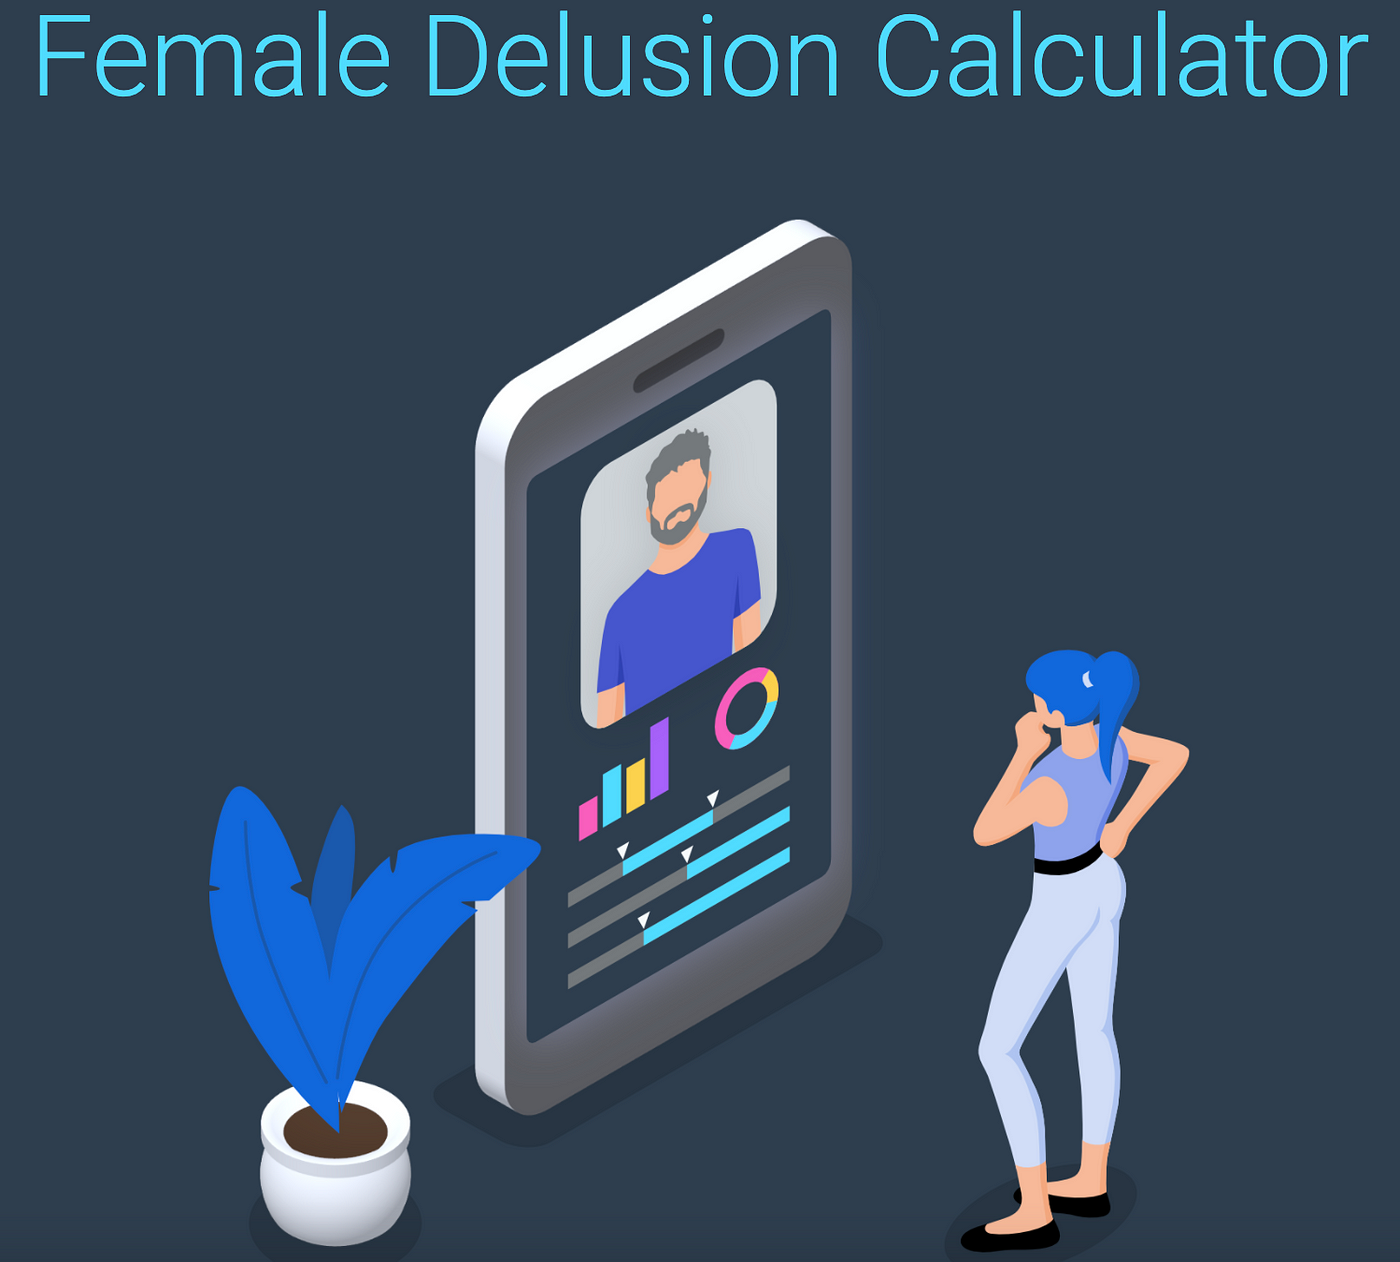 man delusion calculator